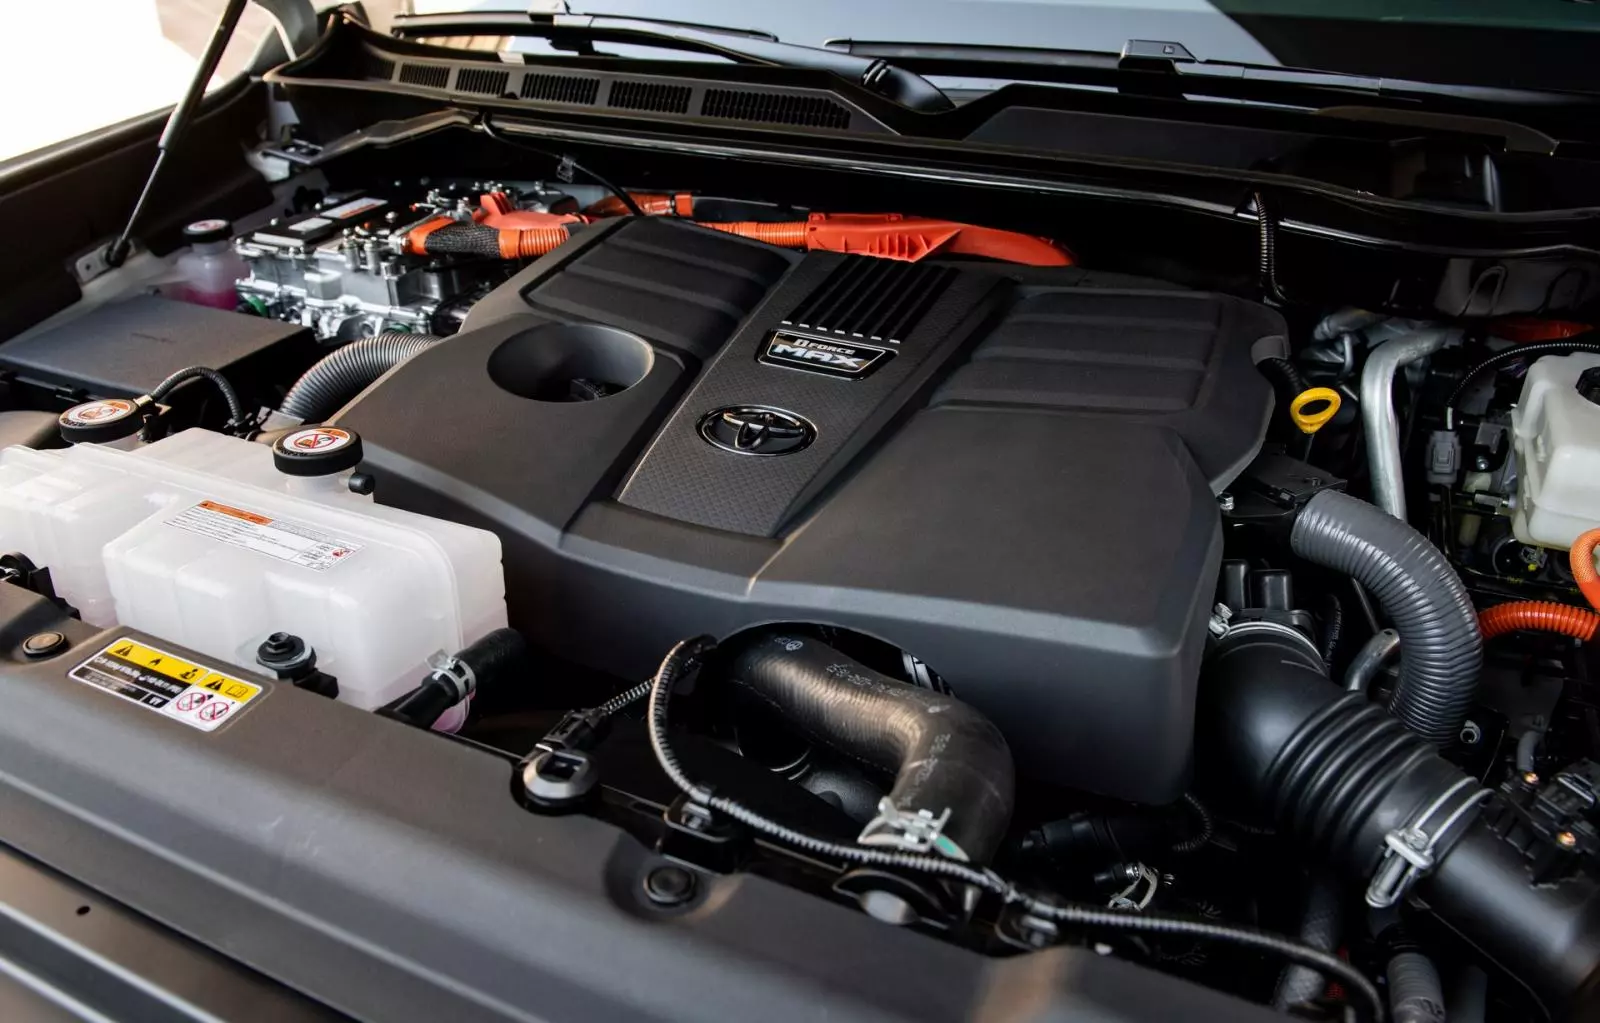 "Trái tim" của xe là cỗ máy hybrid V6 3.5L tăng áp kép có tên gọi i-Force Max 1